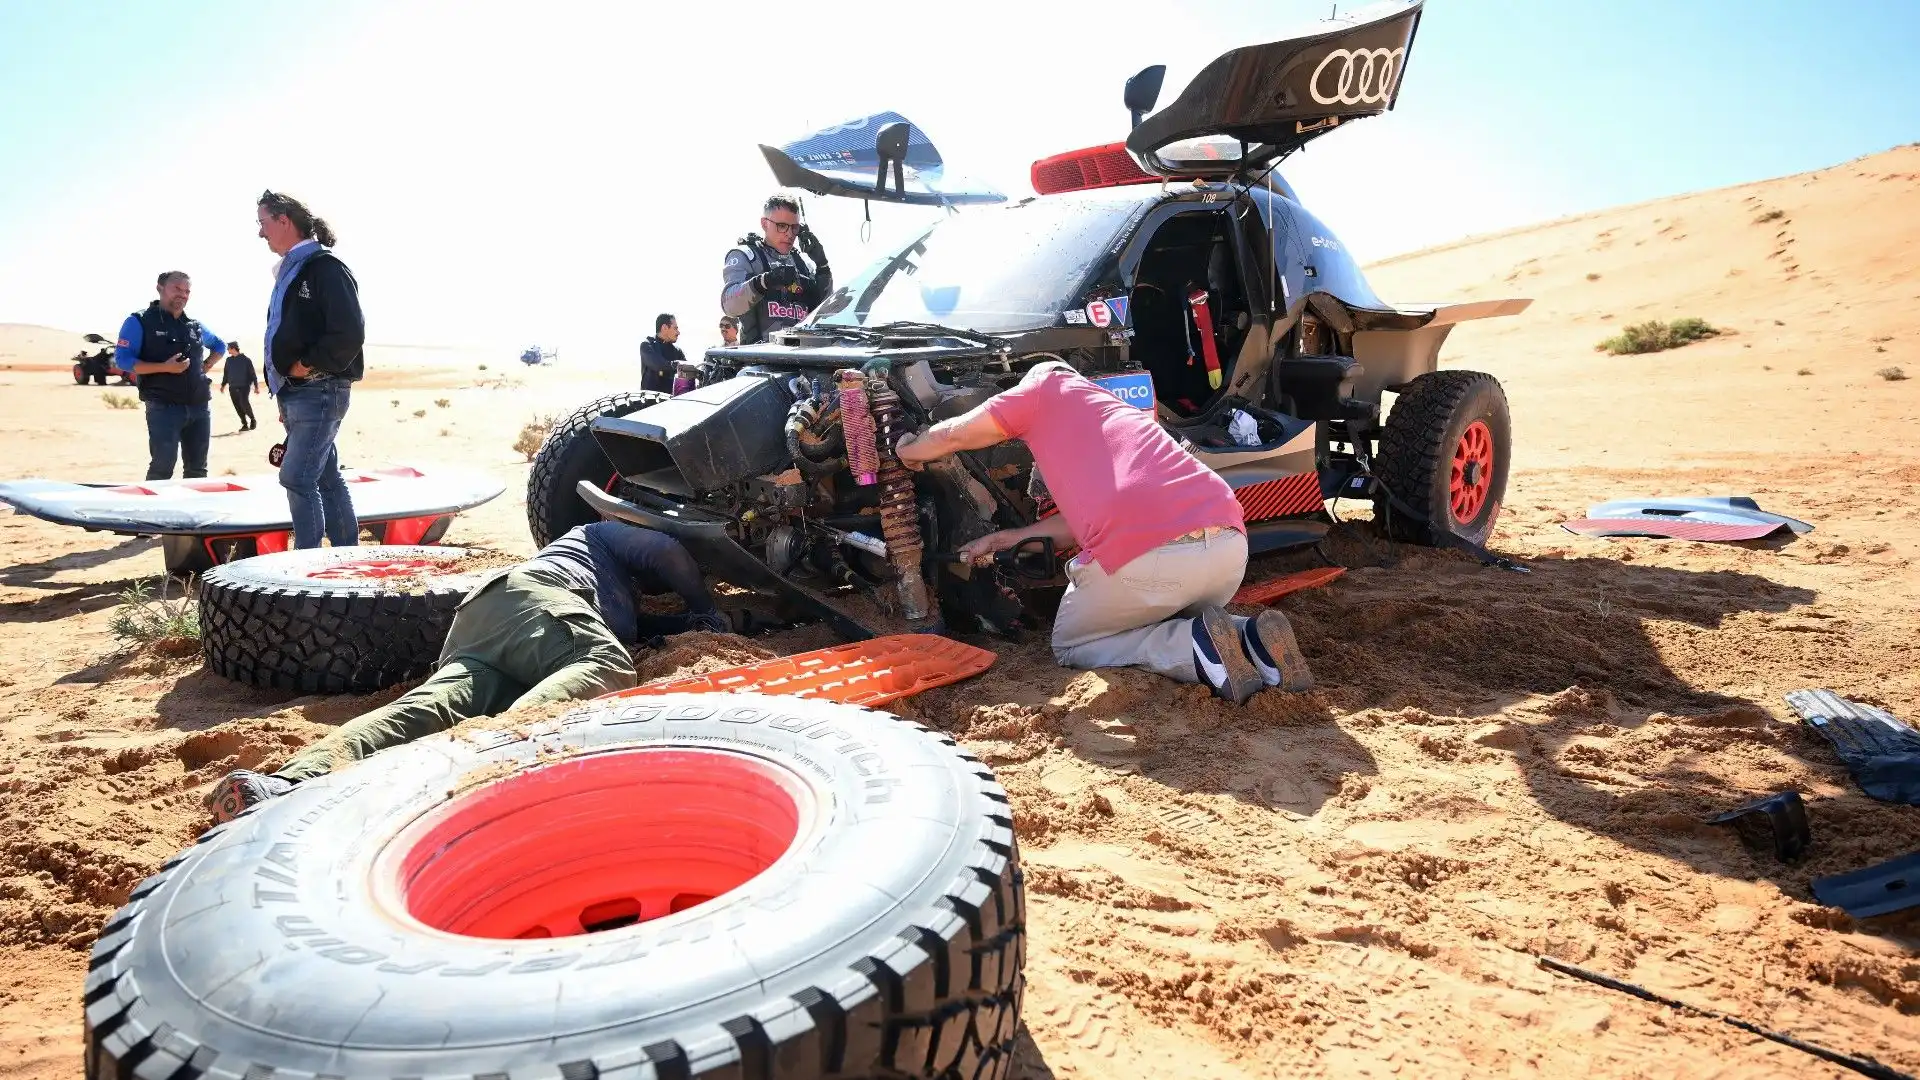 Problemi per Carlos Sainz: le immagini dell'auto guasta in mezzo al deserto